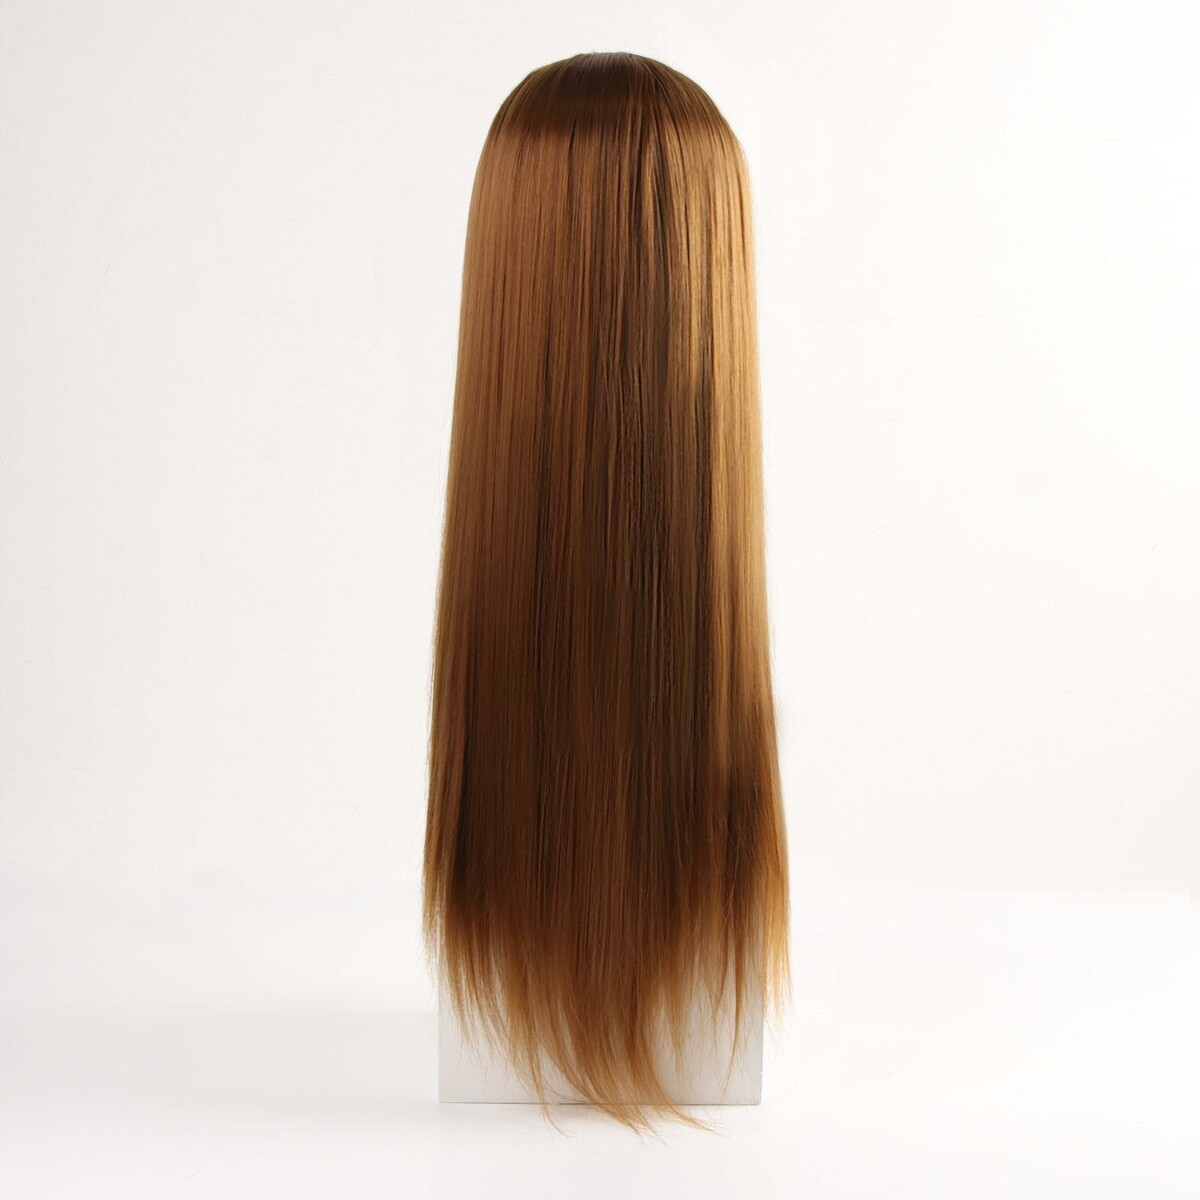 Голова учебная, искусственный волос, 55-60 см, без штатива, цвет пшеничный Queen fair 01048536 - фото 2